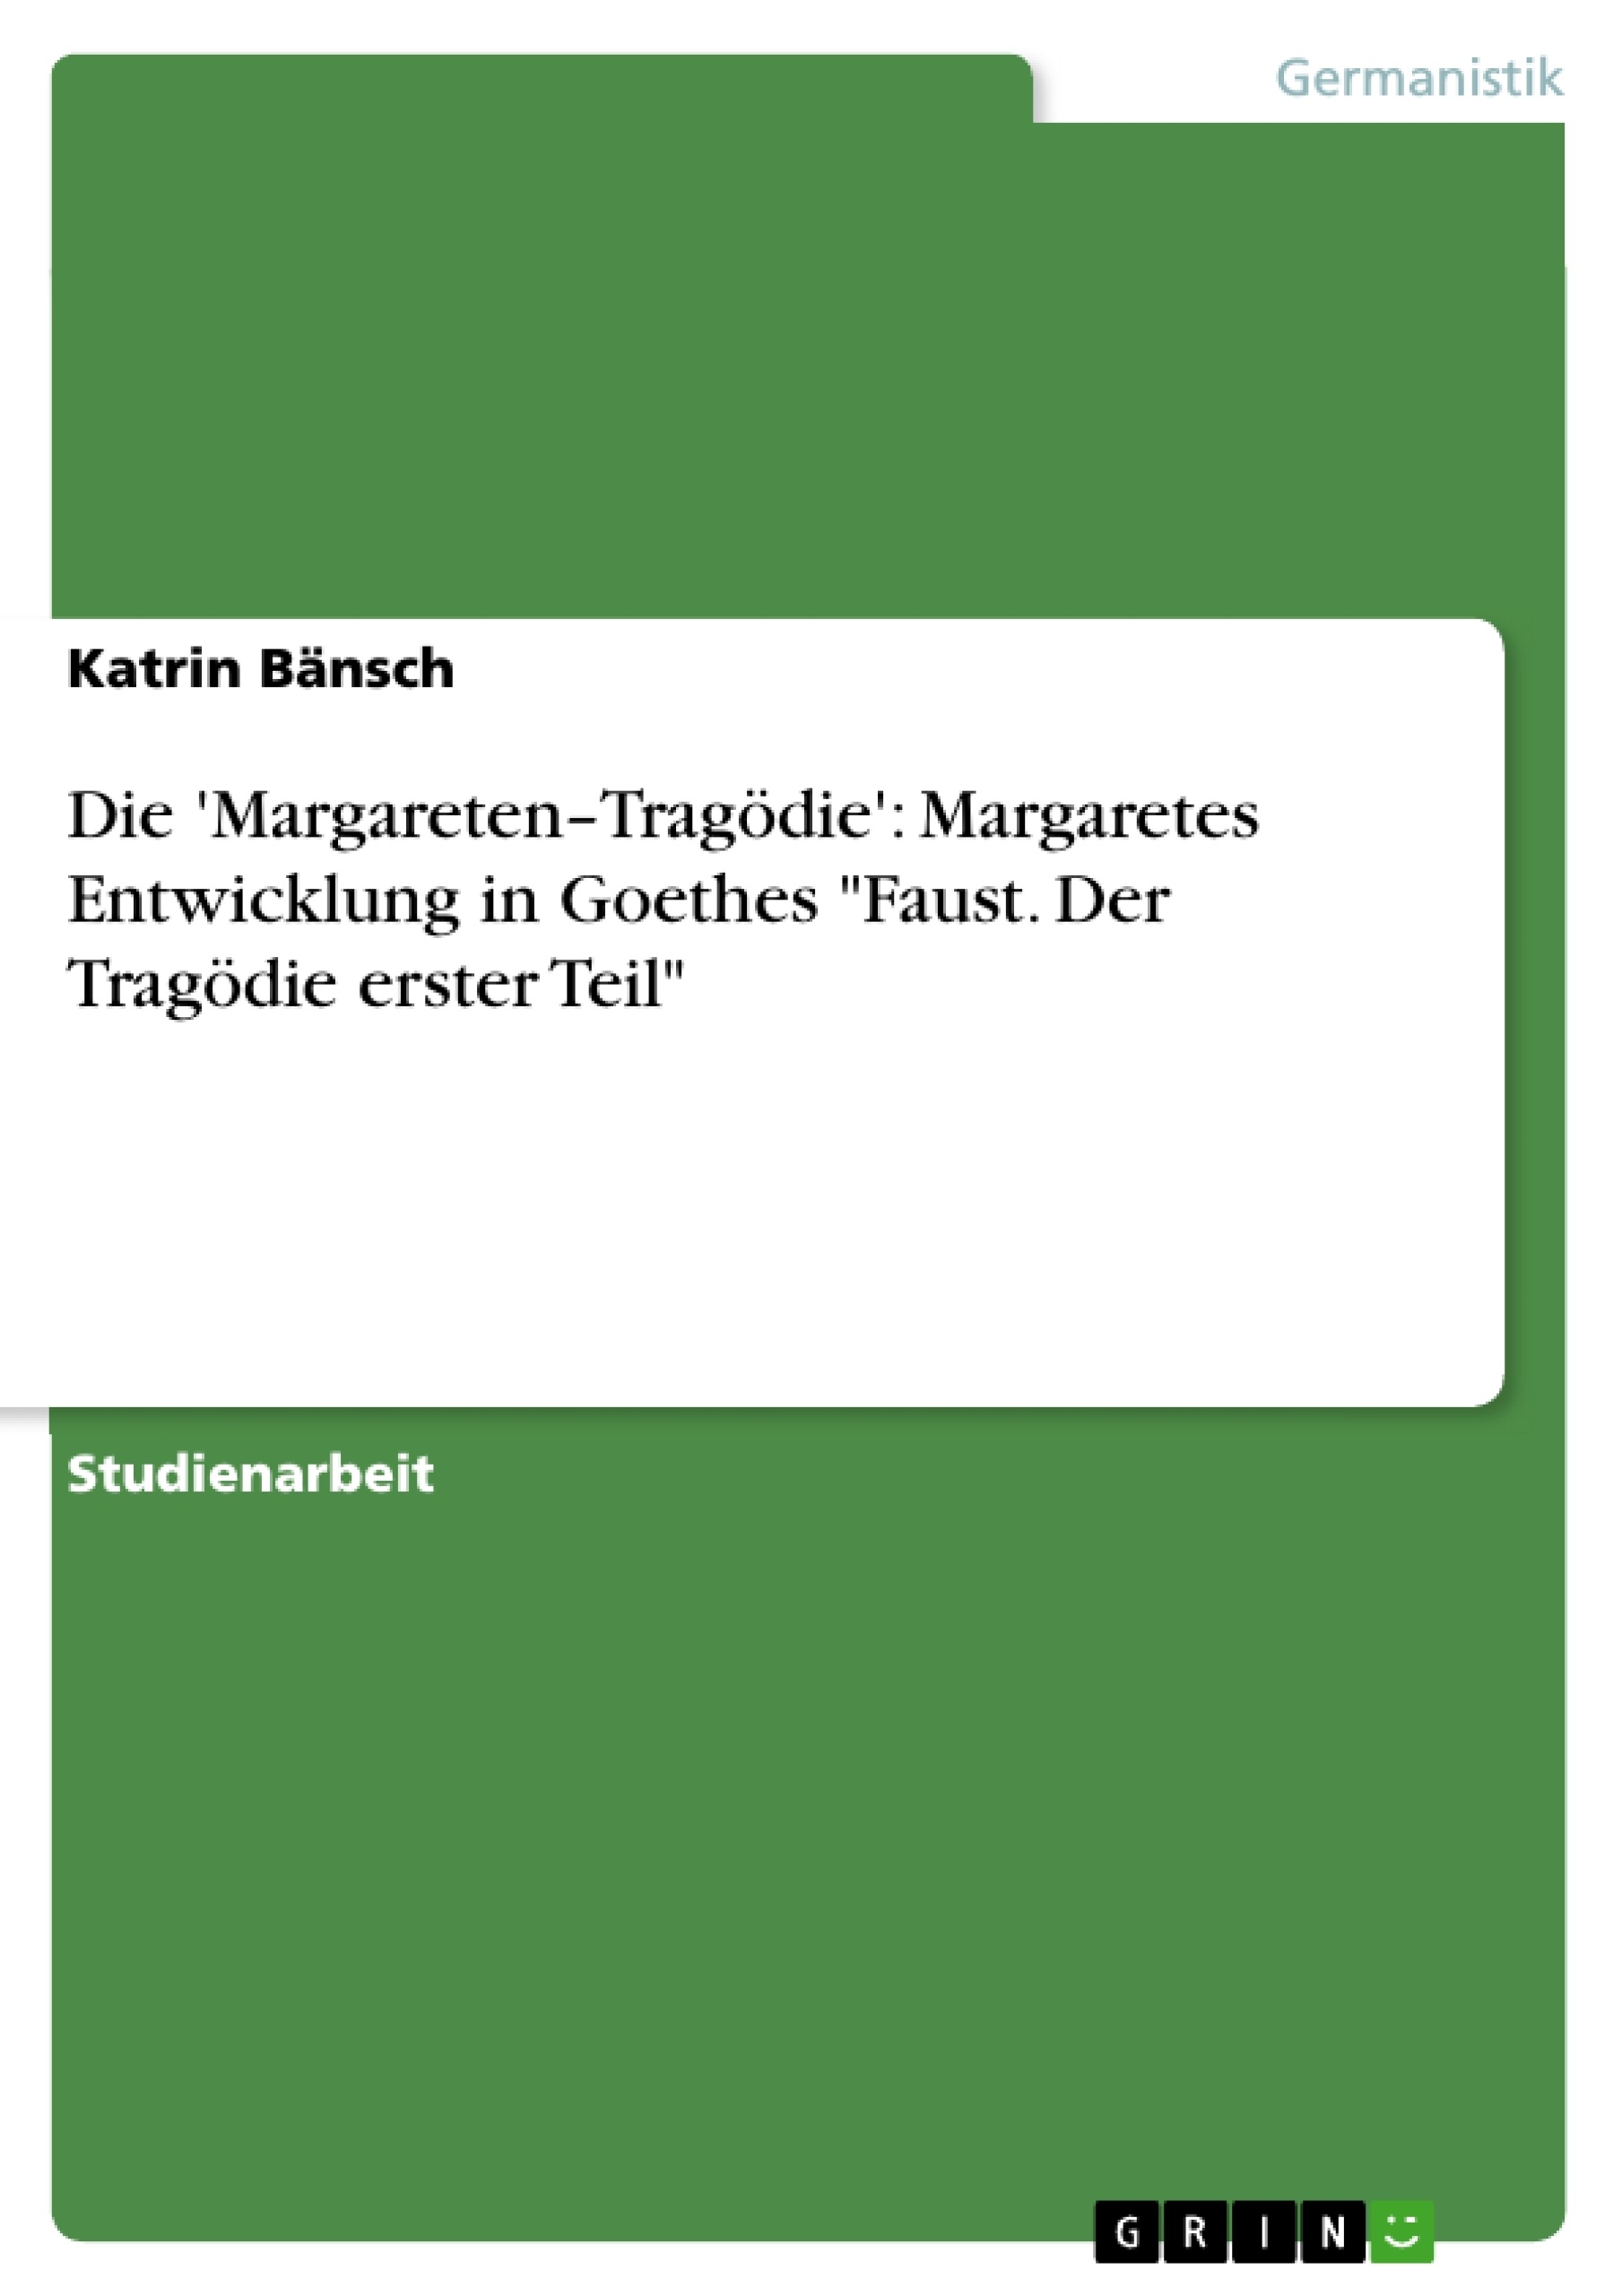 Título: Die 'Margareten–Tragödie': Margaretes Entwicklung in Goethes "Faust. Der Tragödie erster Teil"